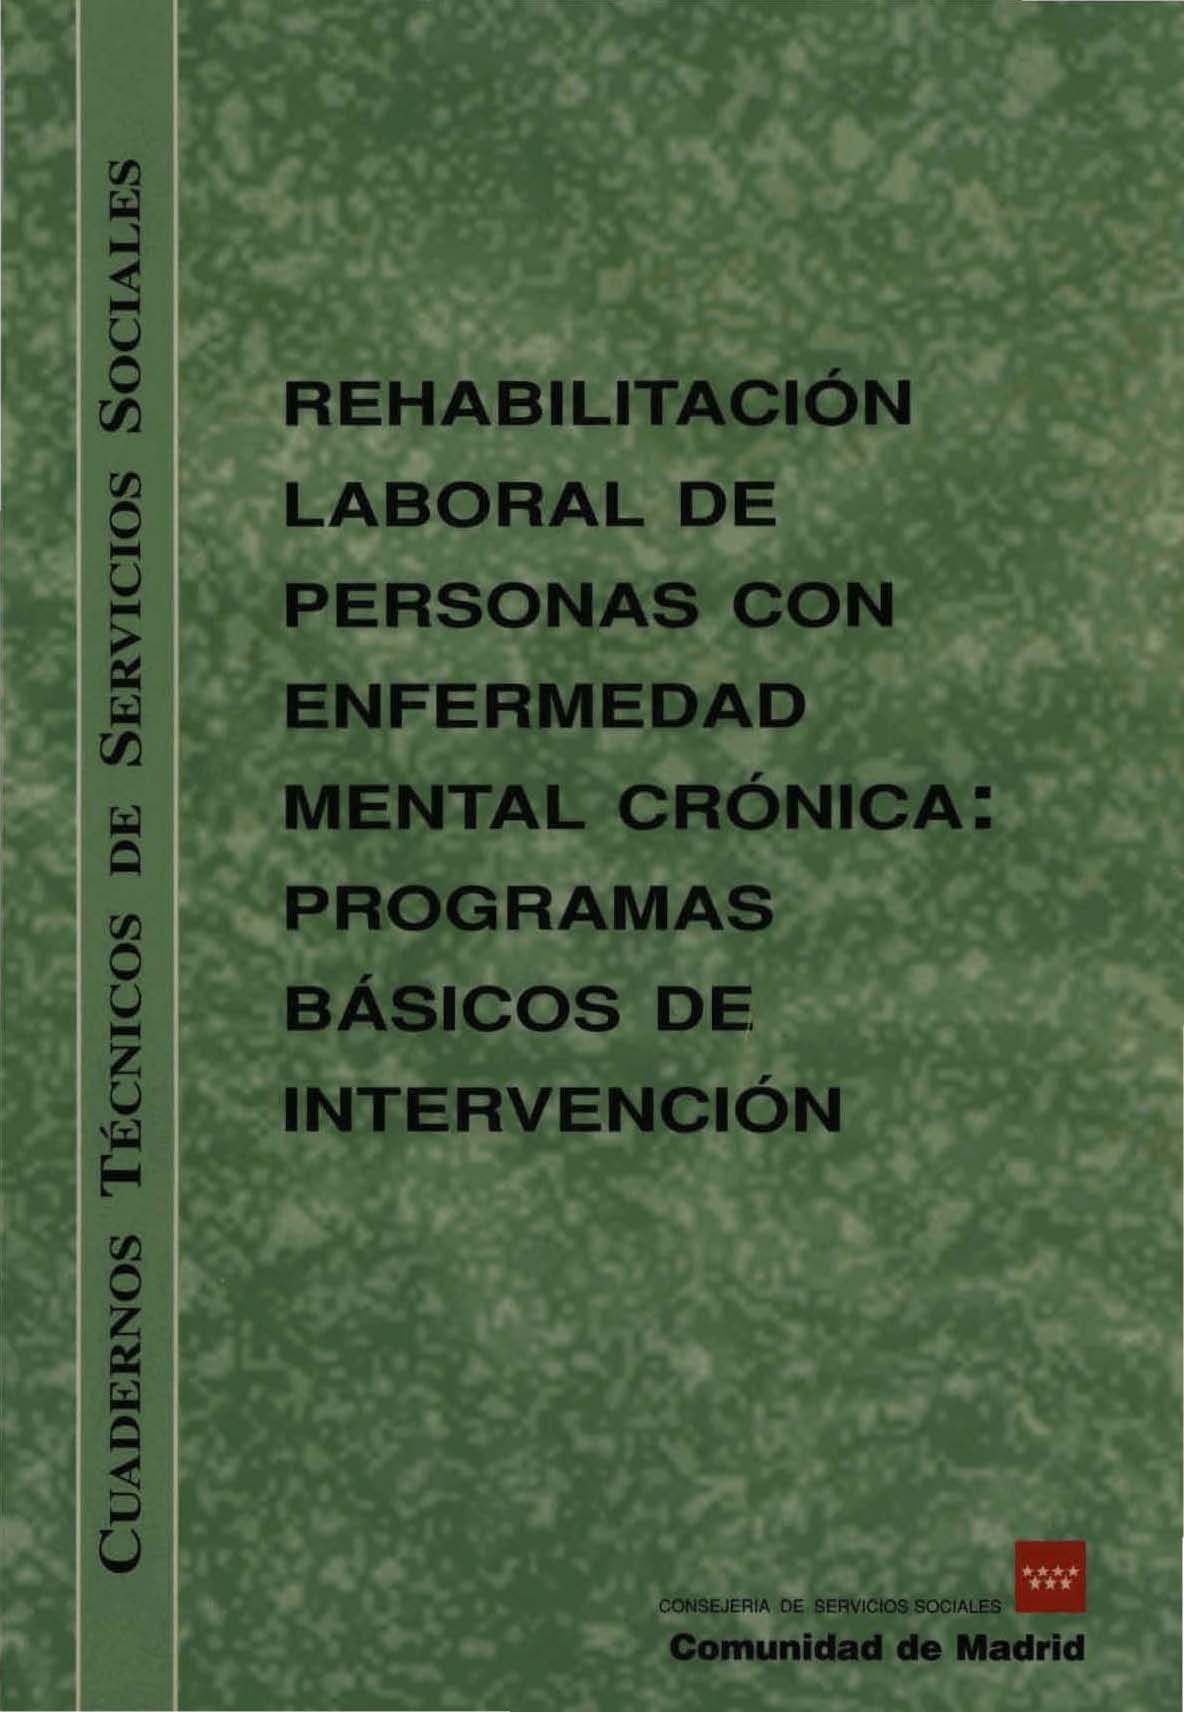 Portada de Rehabilitación laboral de personas con enfermedad mental crónica programas básicos de intervención.